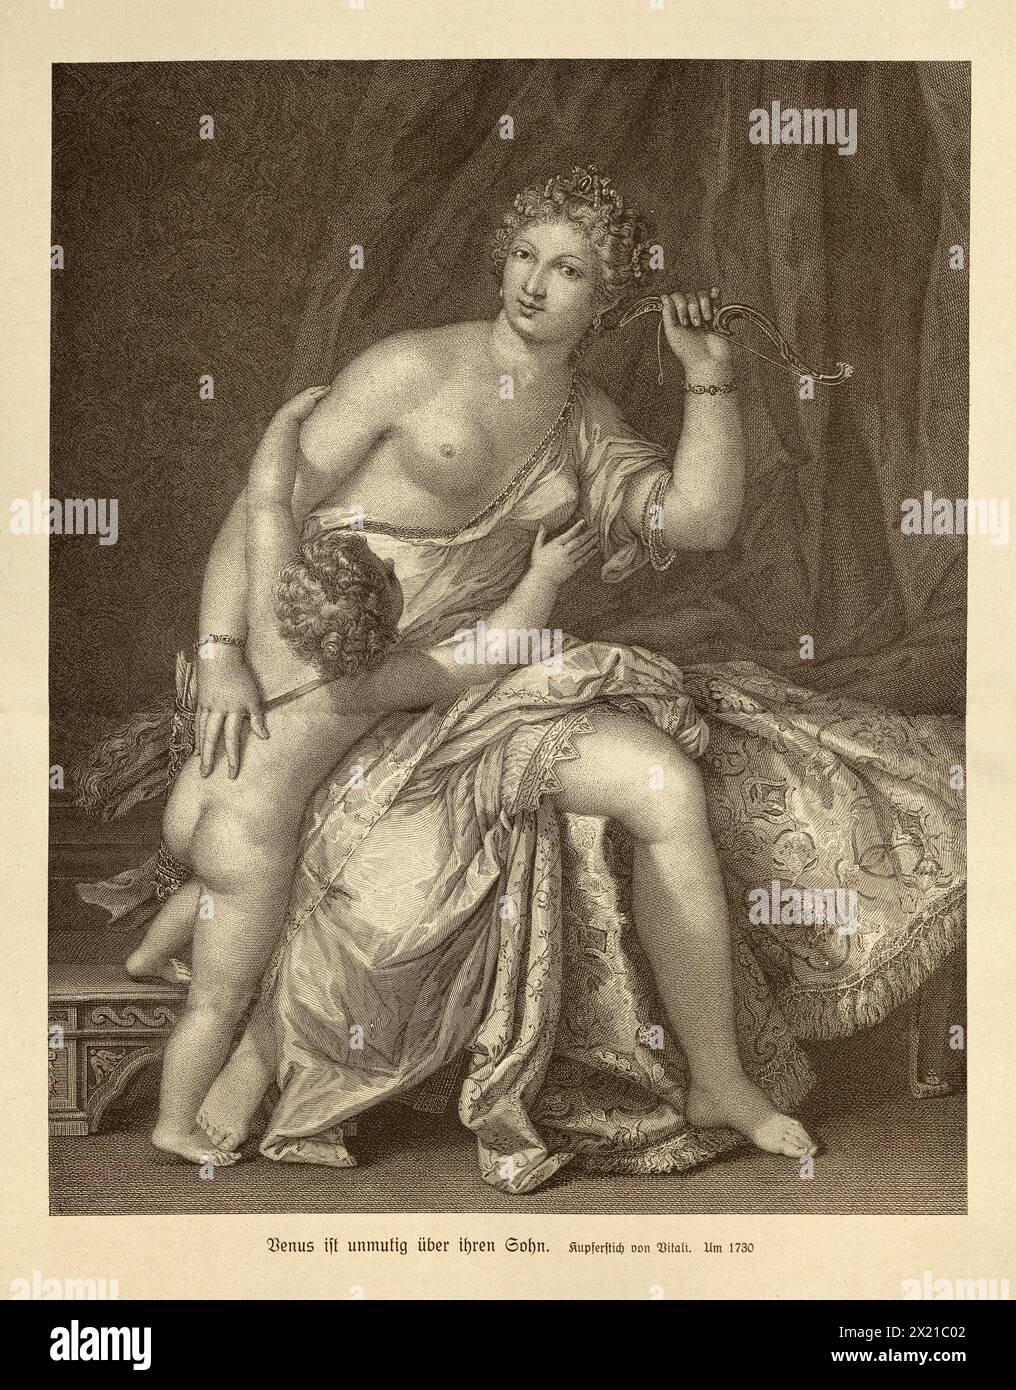 Venus entschärft Amor, Göttin sitzt auf einem Bett und hält einen Bogen hoch, und Amor versucht, die Waffe zu erreichen, Gravur aus dem 18. Jahrhundert Stockfoto